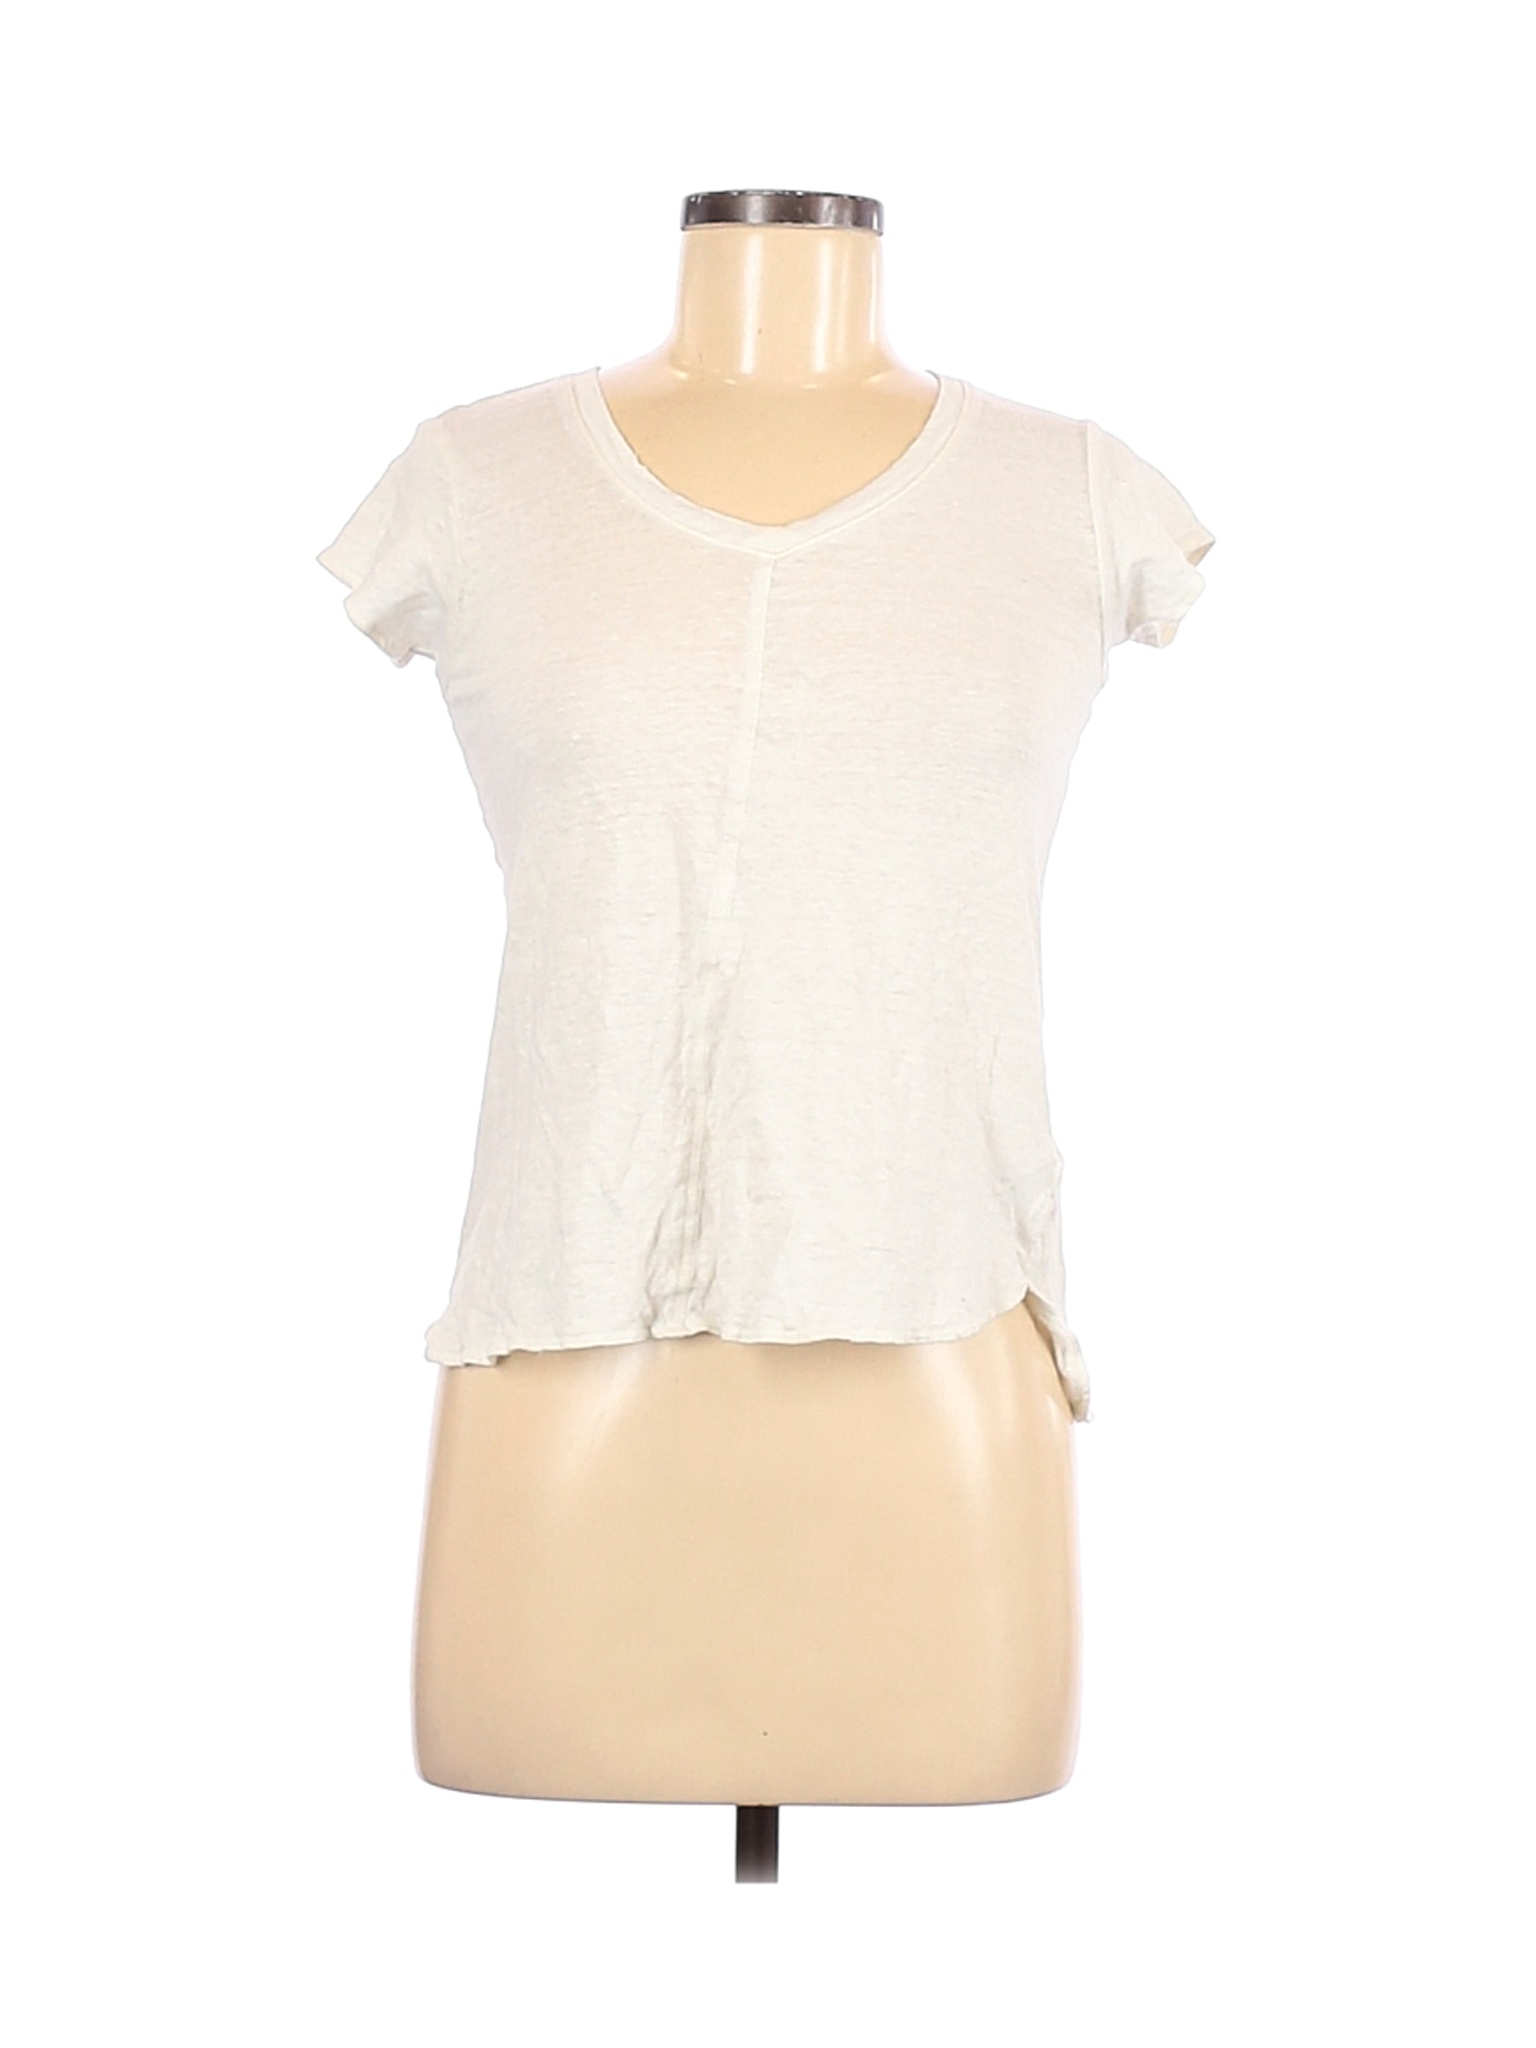 Tahari Women Ivory Short Sleeve T-Shirt S | eBay